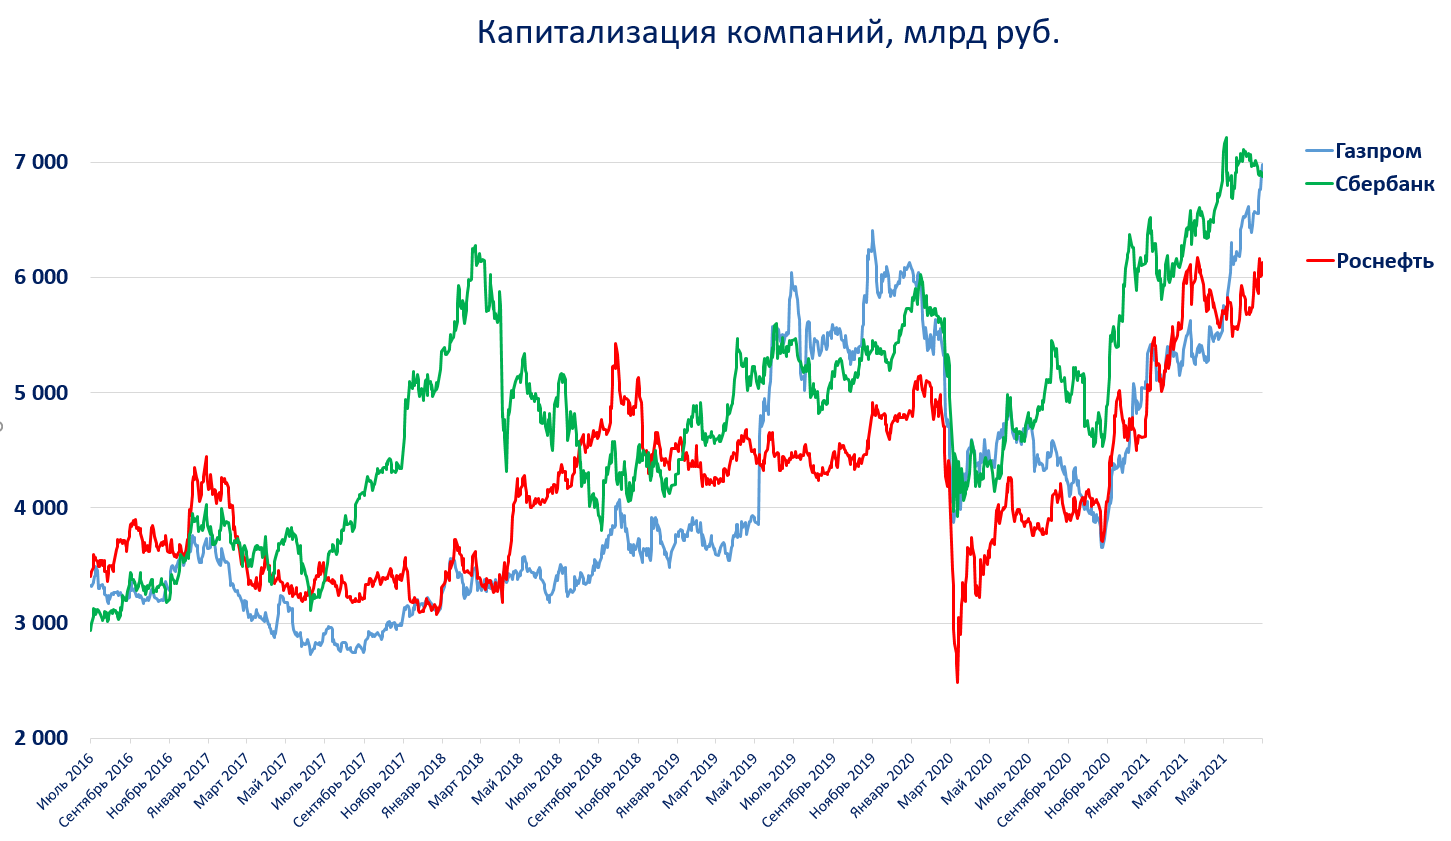 Капитализация золота в мире. Капитализация фондового рынка России. Капитализация Газпрома в 2010 году. Капитализация Газпрома за 20 лет. Капитализация Газпрома по годам.